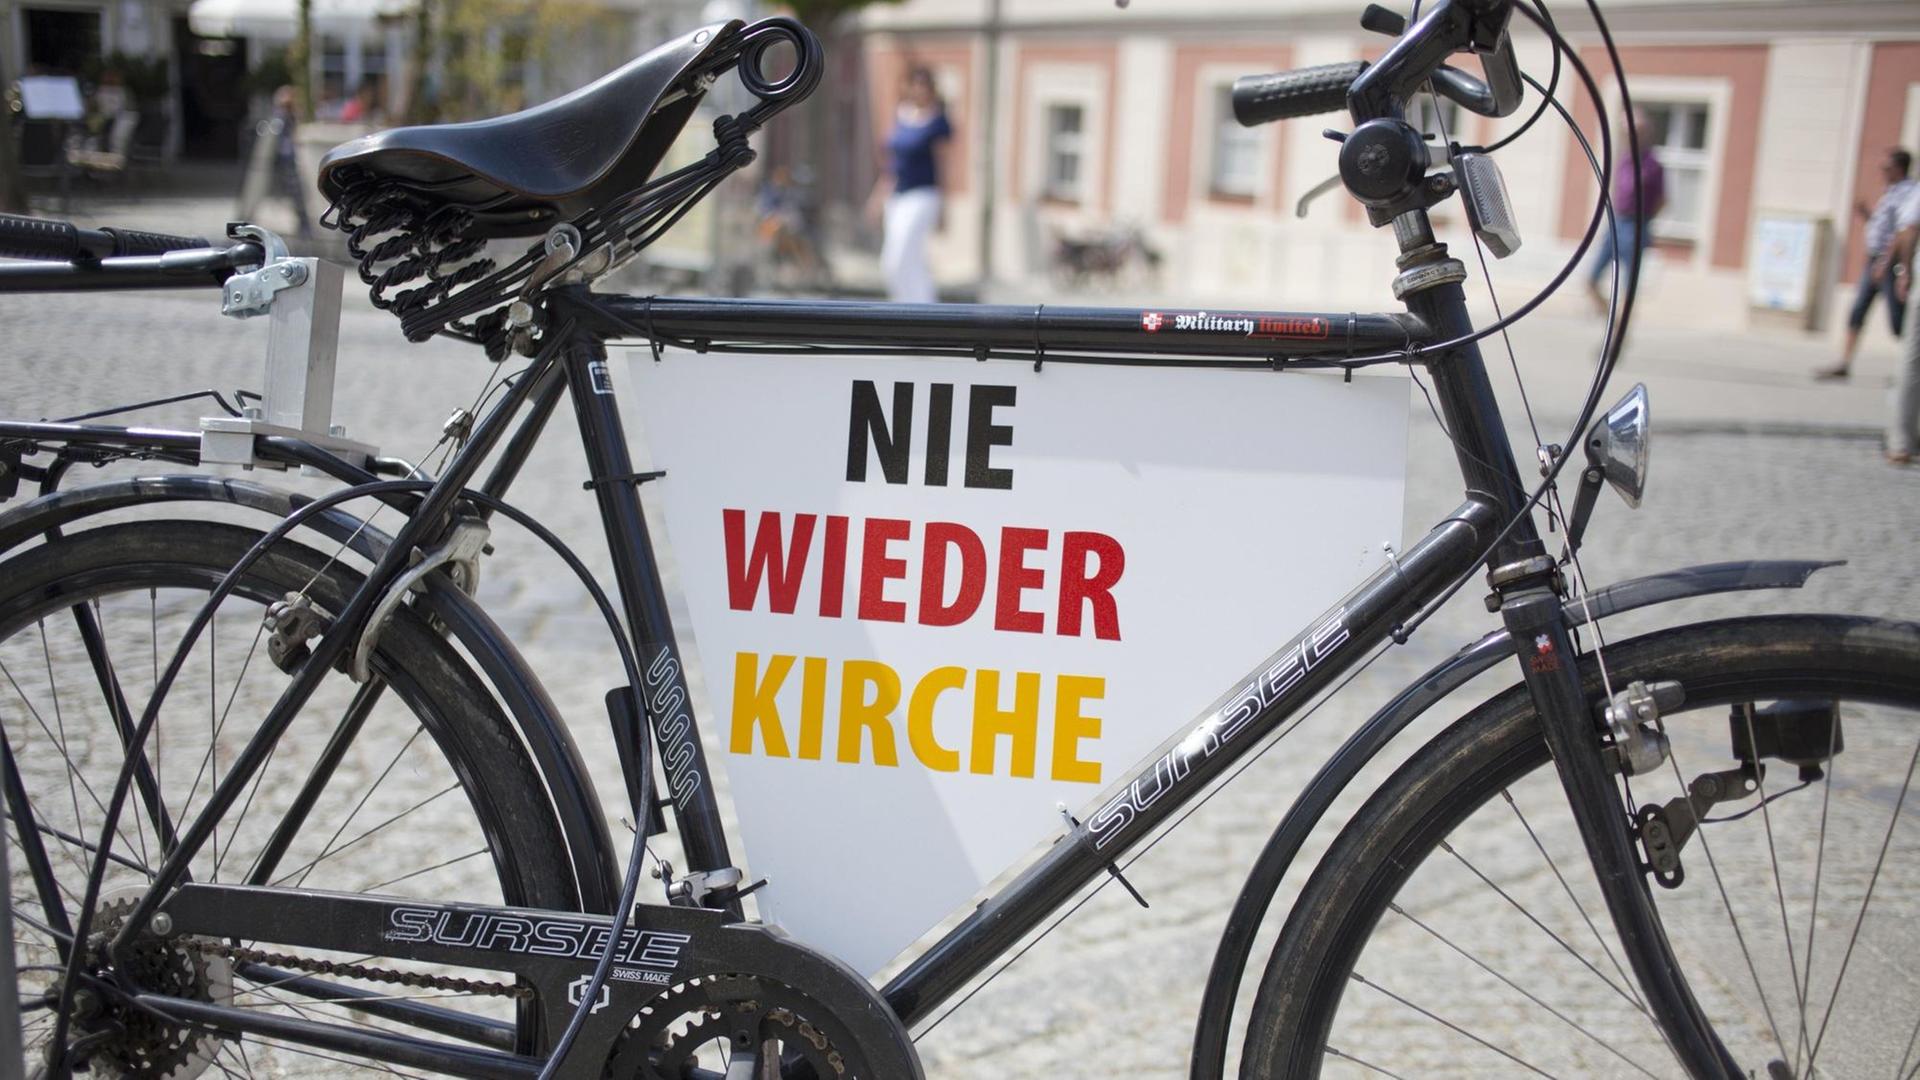 Ein Fahrrad mit der Aufschrift "Nie wieder Kirche" in Schwarz-Rot-Gold